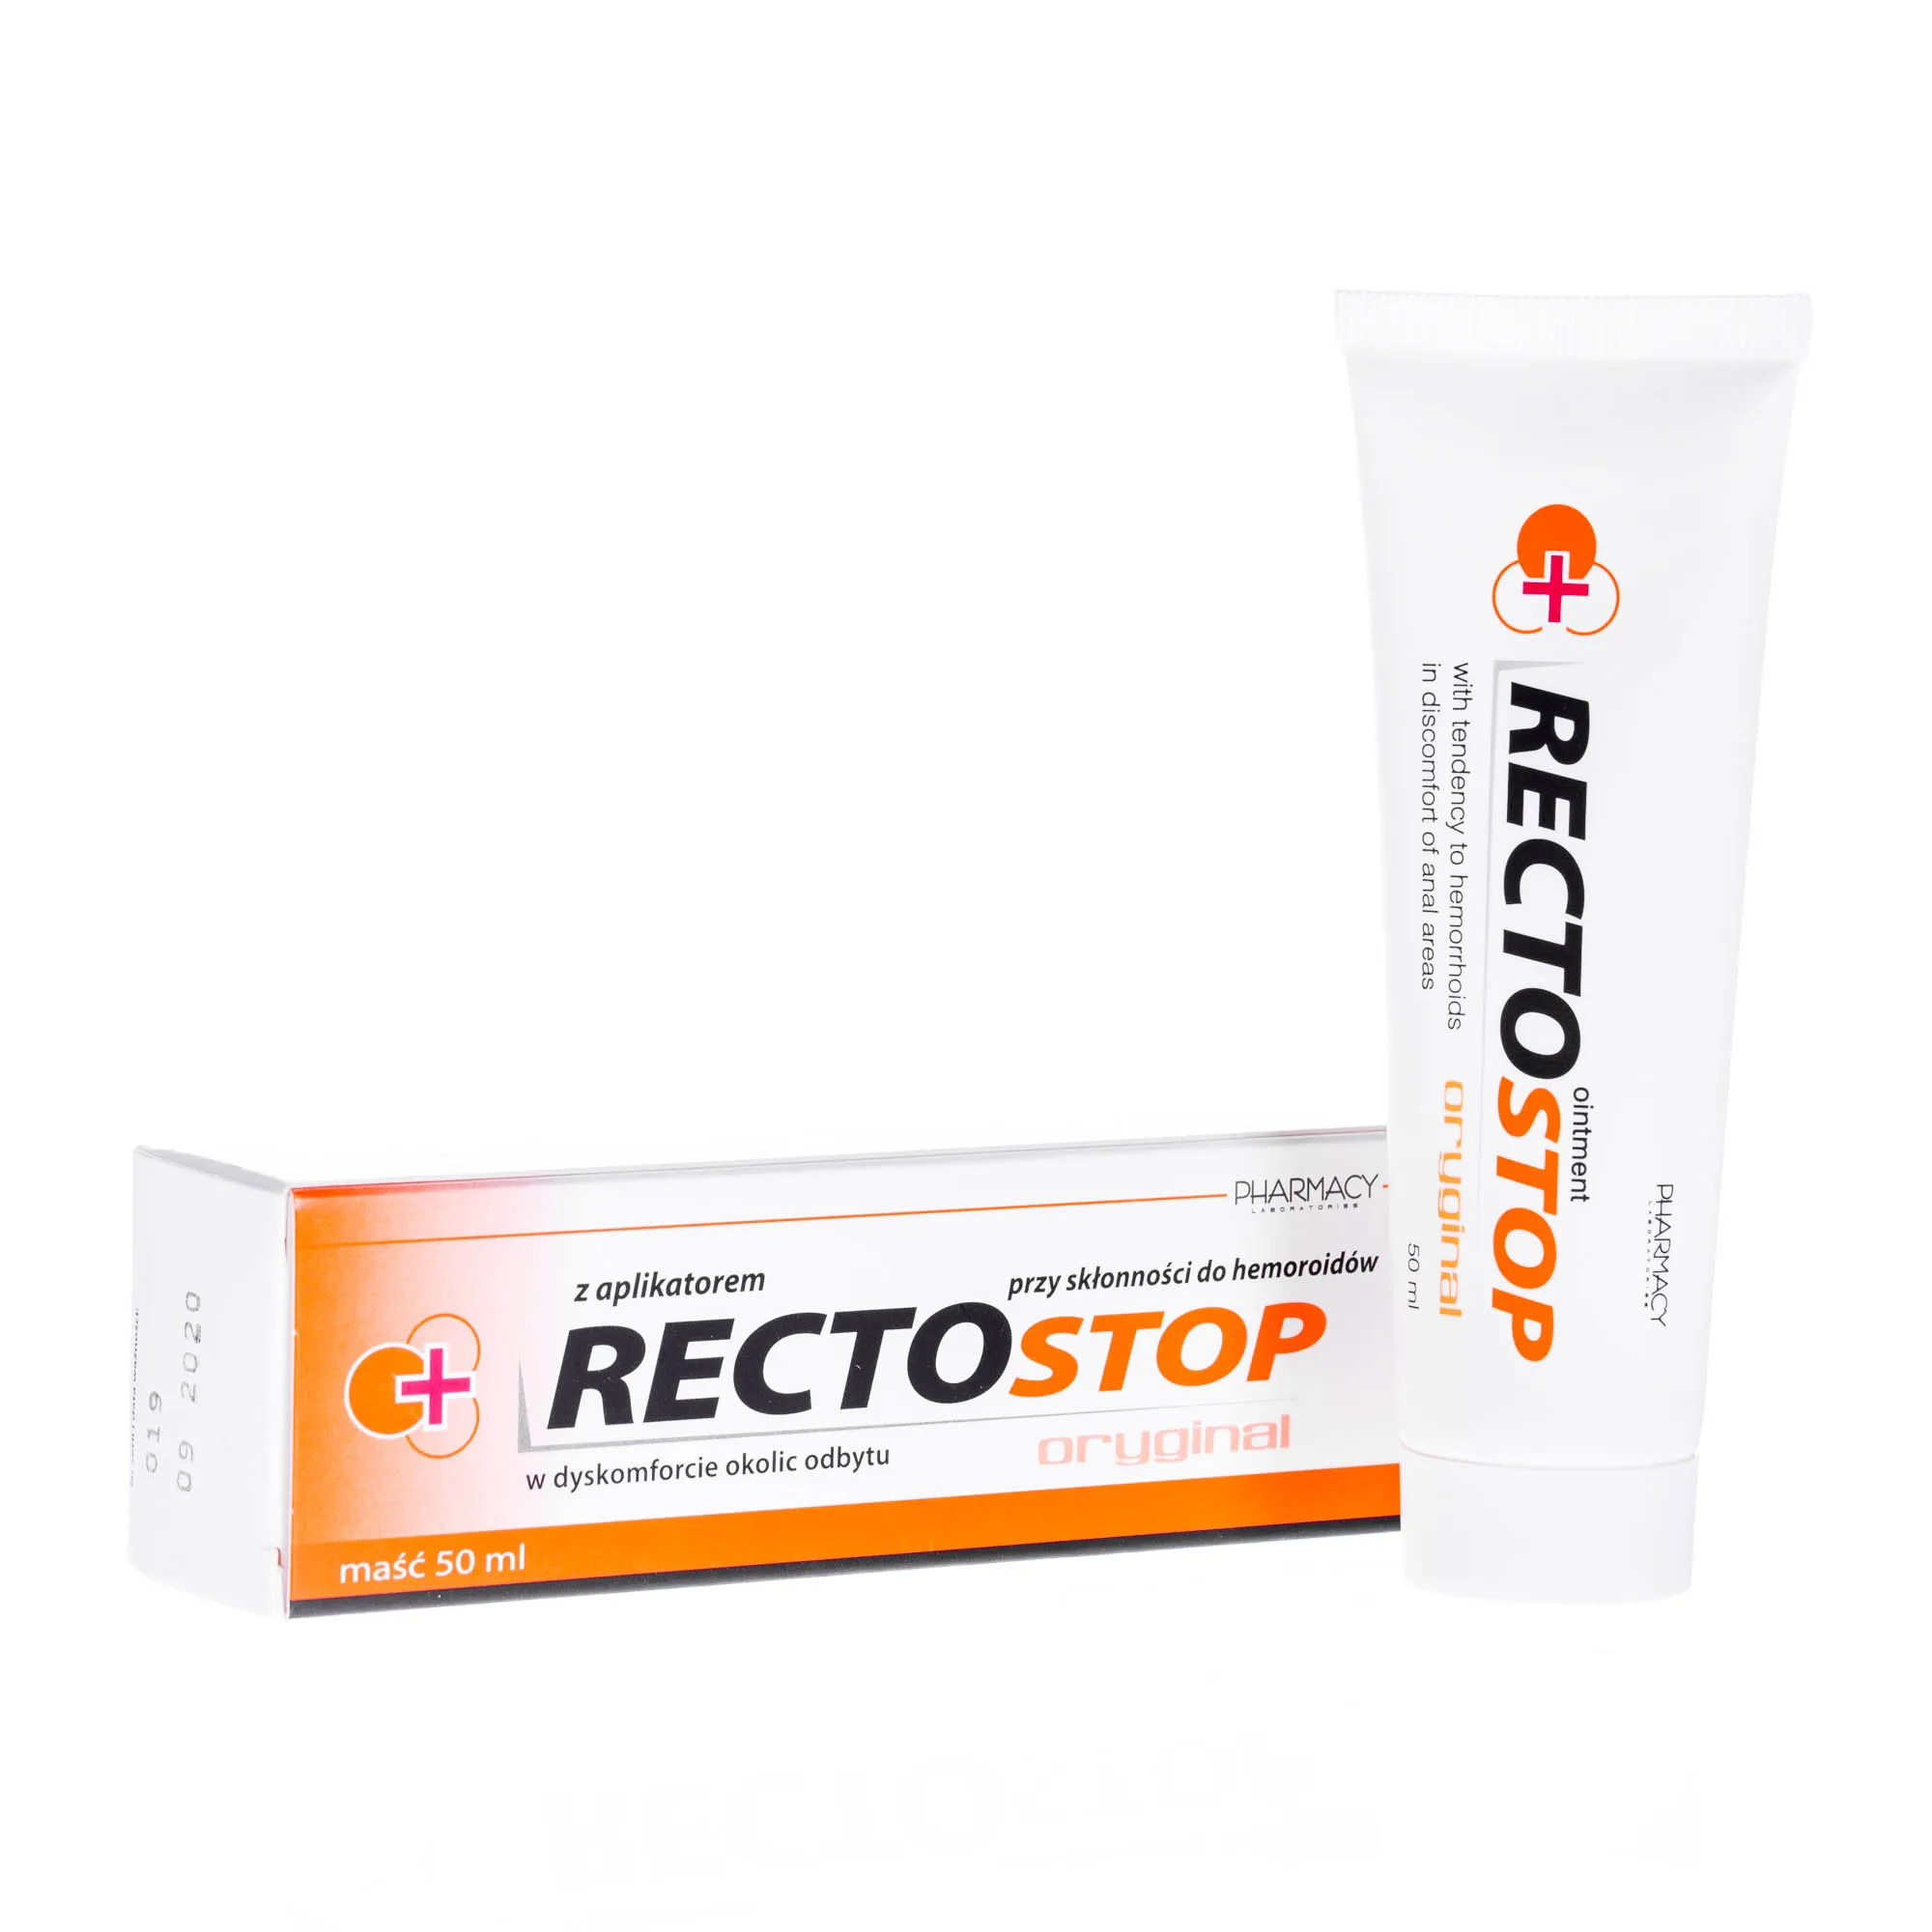 Rectostop - maść z aplikatorem stosowana przy skłonności do hemoroidów, 50 ml 